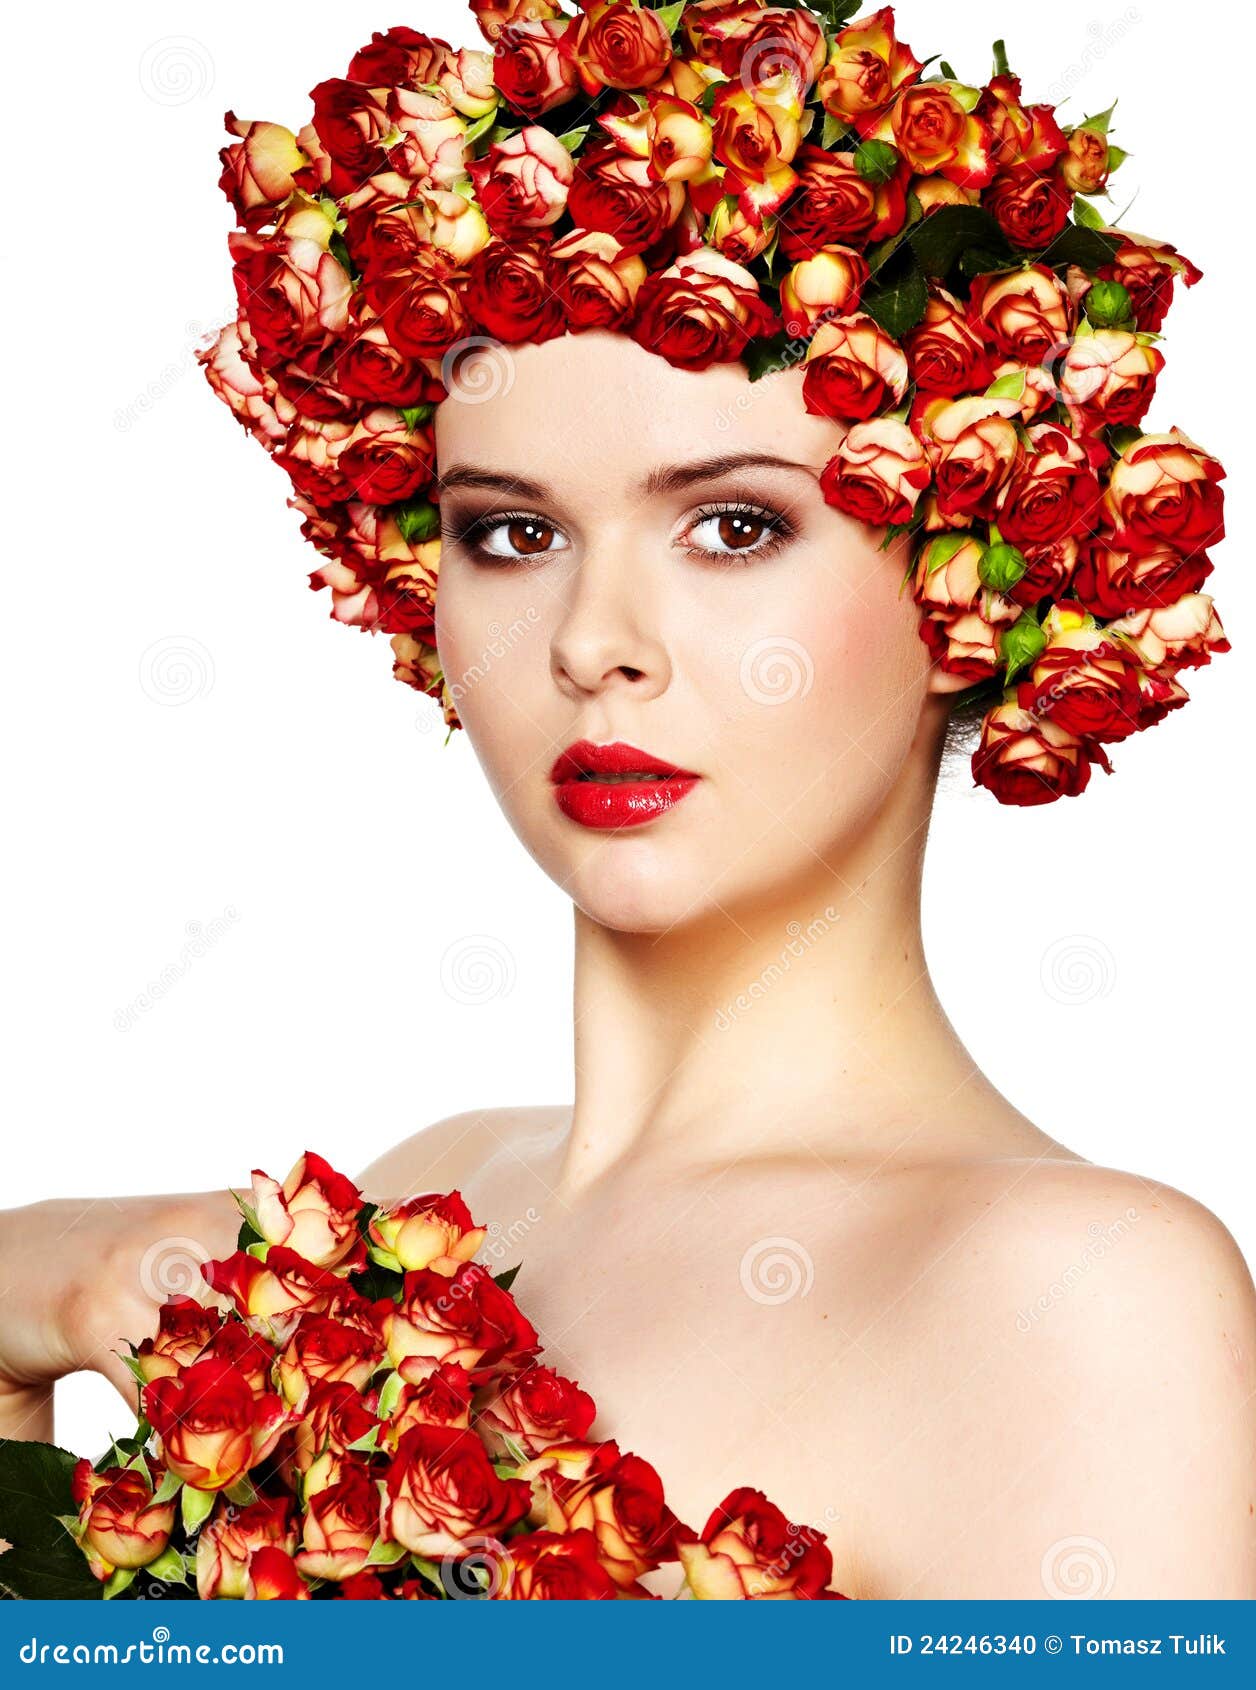 冬季新娘头发玫瑰画像 库存图片. 图片 包括有 特写镜头, 配置文件, 婚姻, 女性, 礼服, 样式, 背包 - 162945737